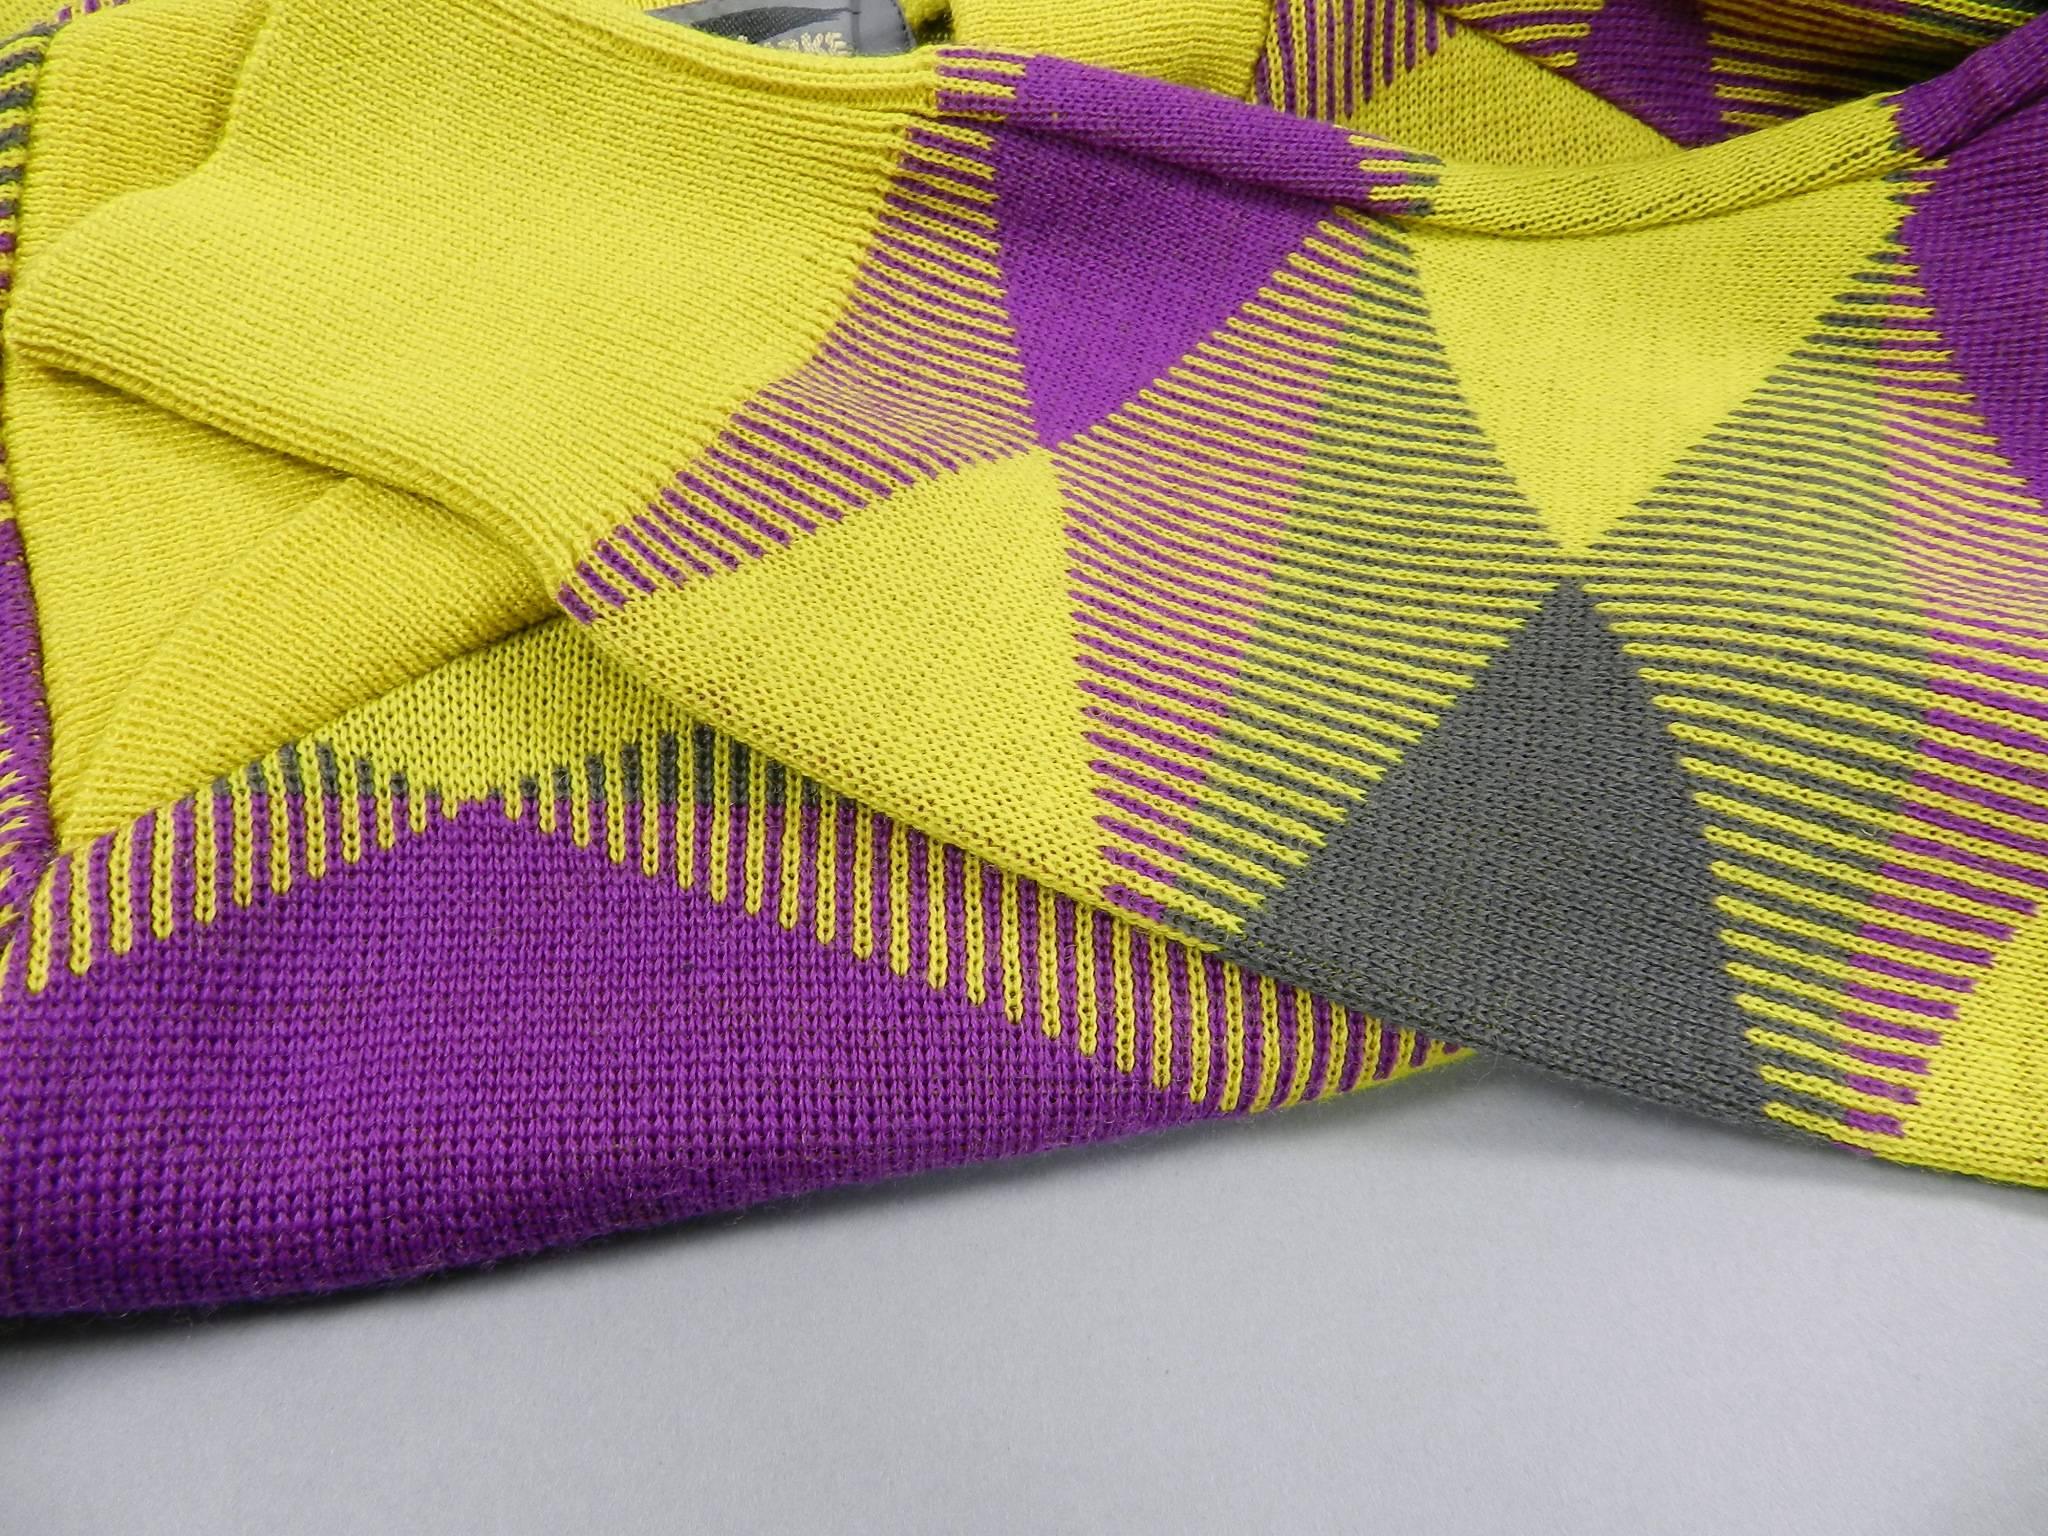 Issey Miyake 1980s Yellow and Purple Sweater and Skirt Set 1